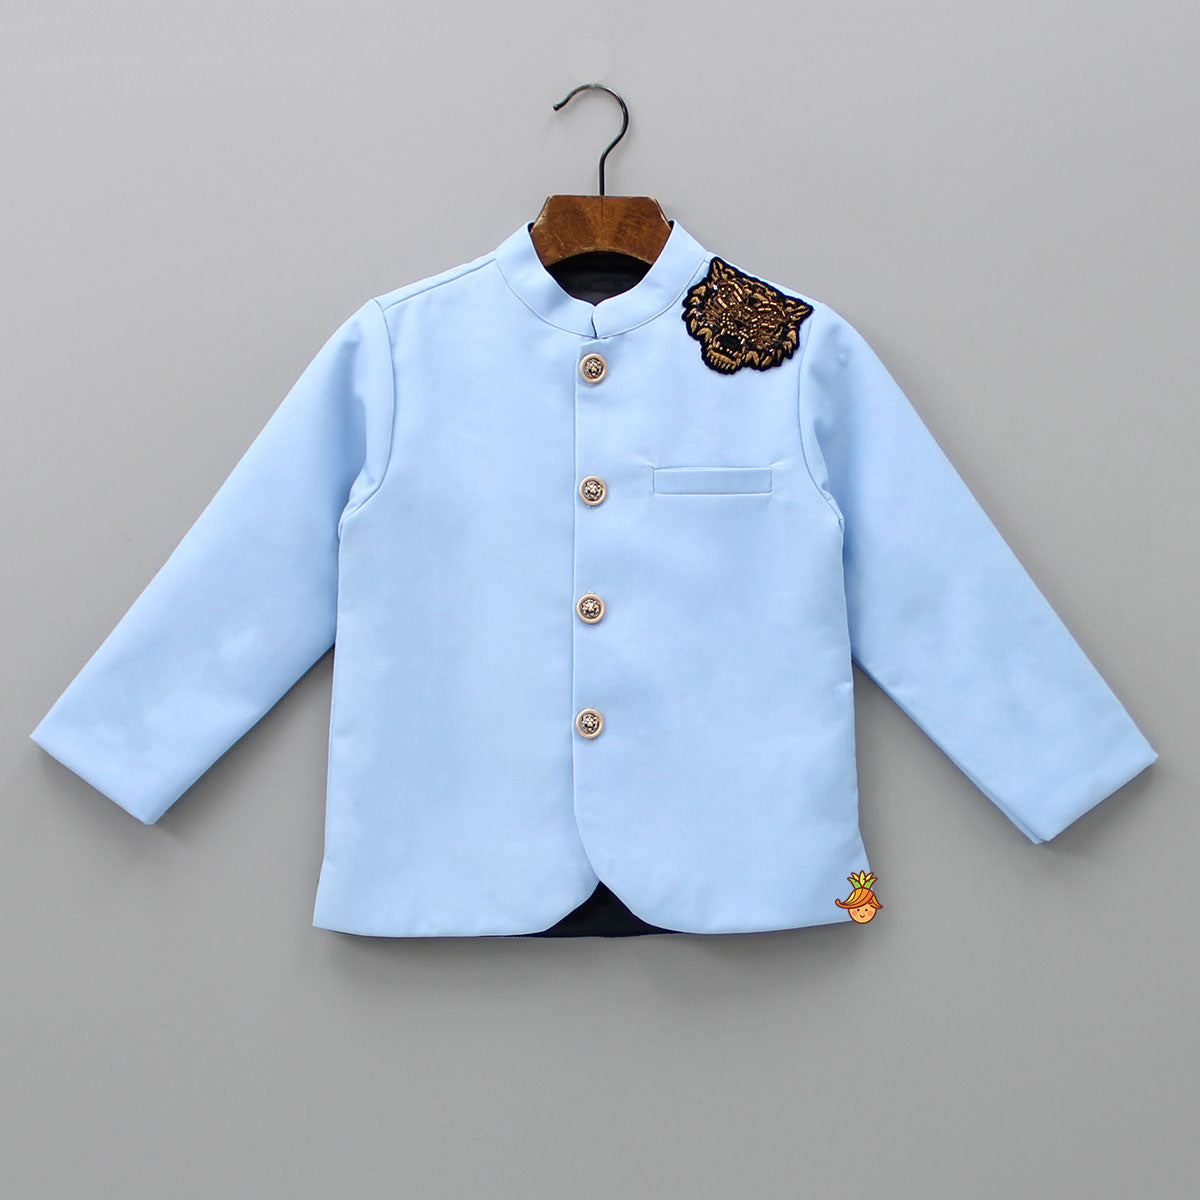 Pre Order: Pocket Detailed Blue Blazer